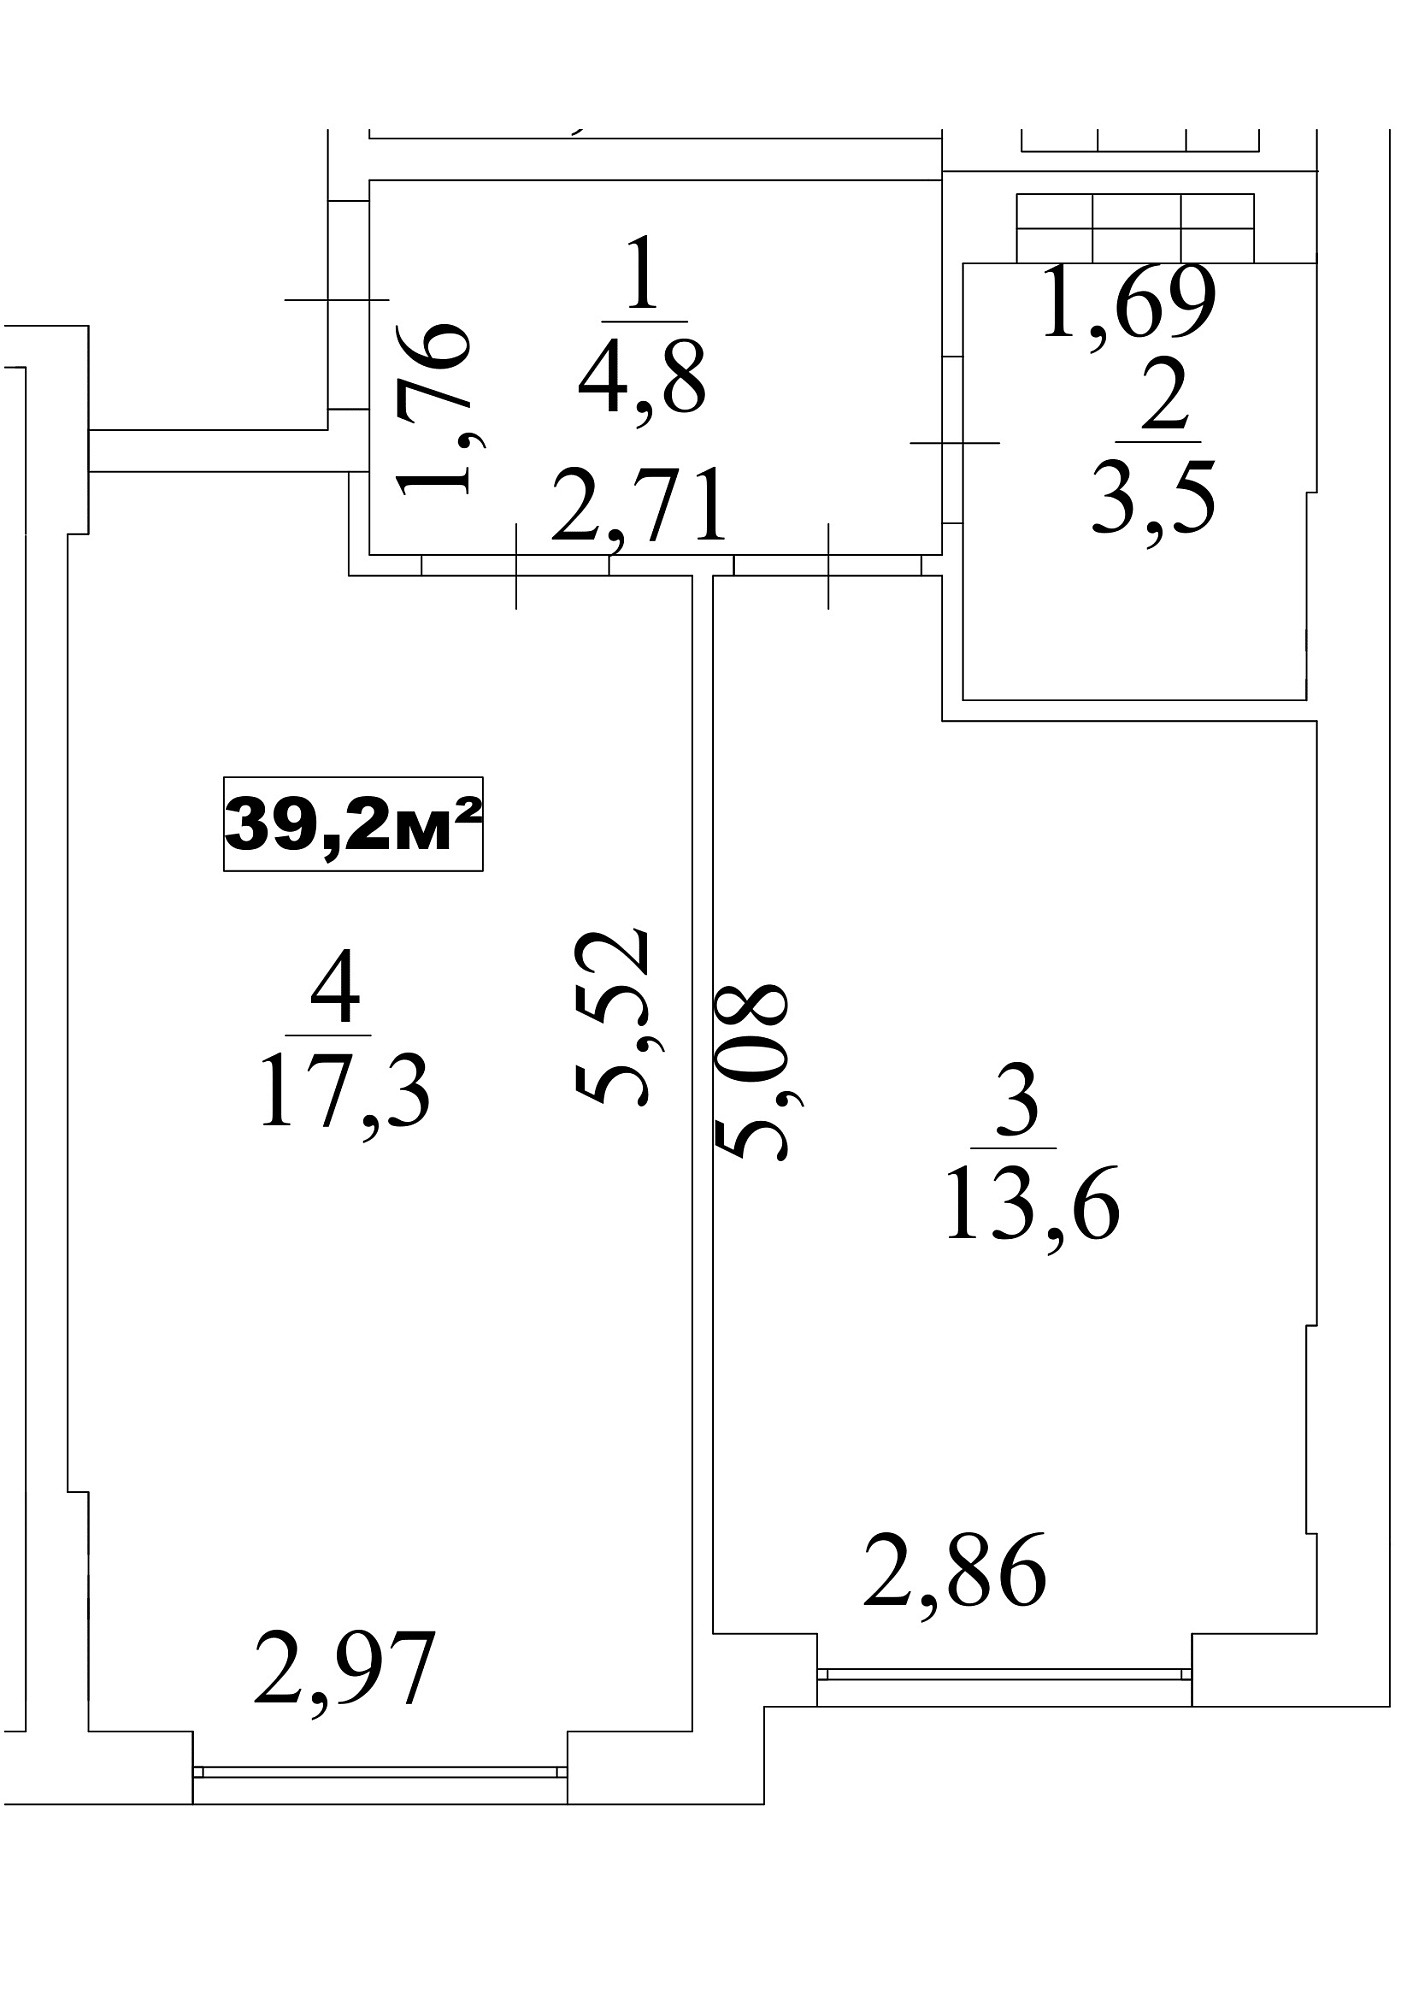 Планировка 1-к квартира площей 39.2м2, AB-10-10/0088в.